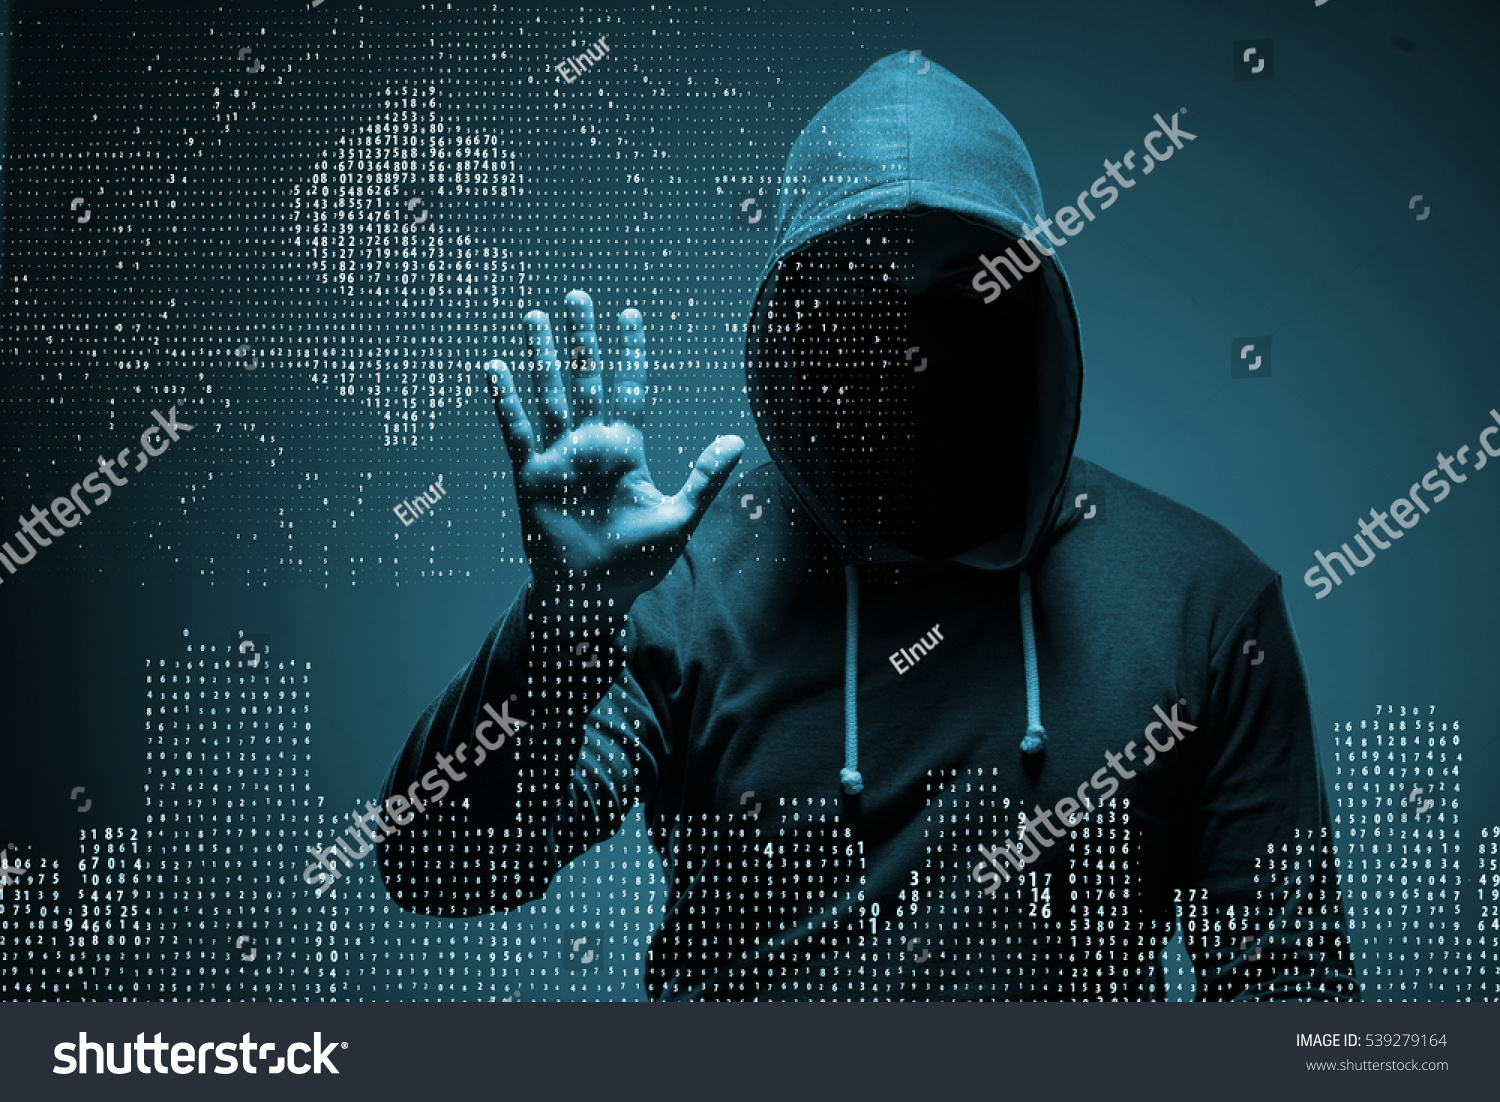 powerpoint-template-fraud-cyber-crime-hacker-mkujouinl